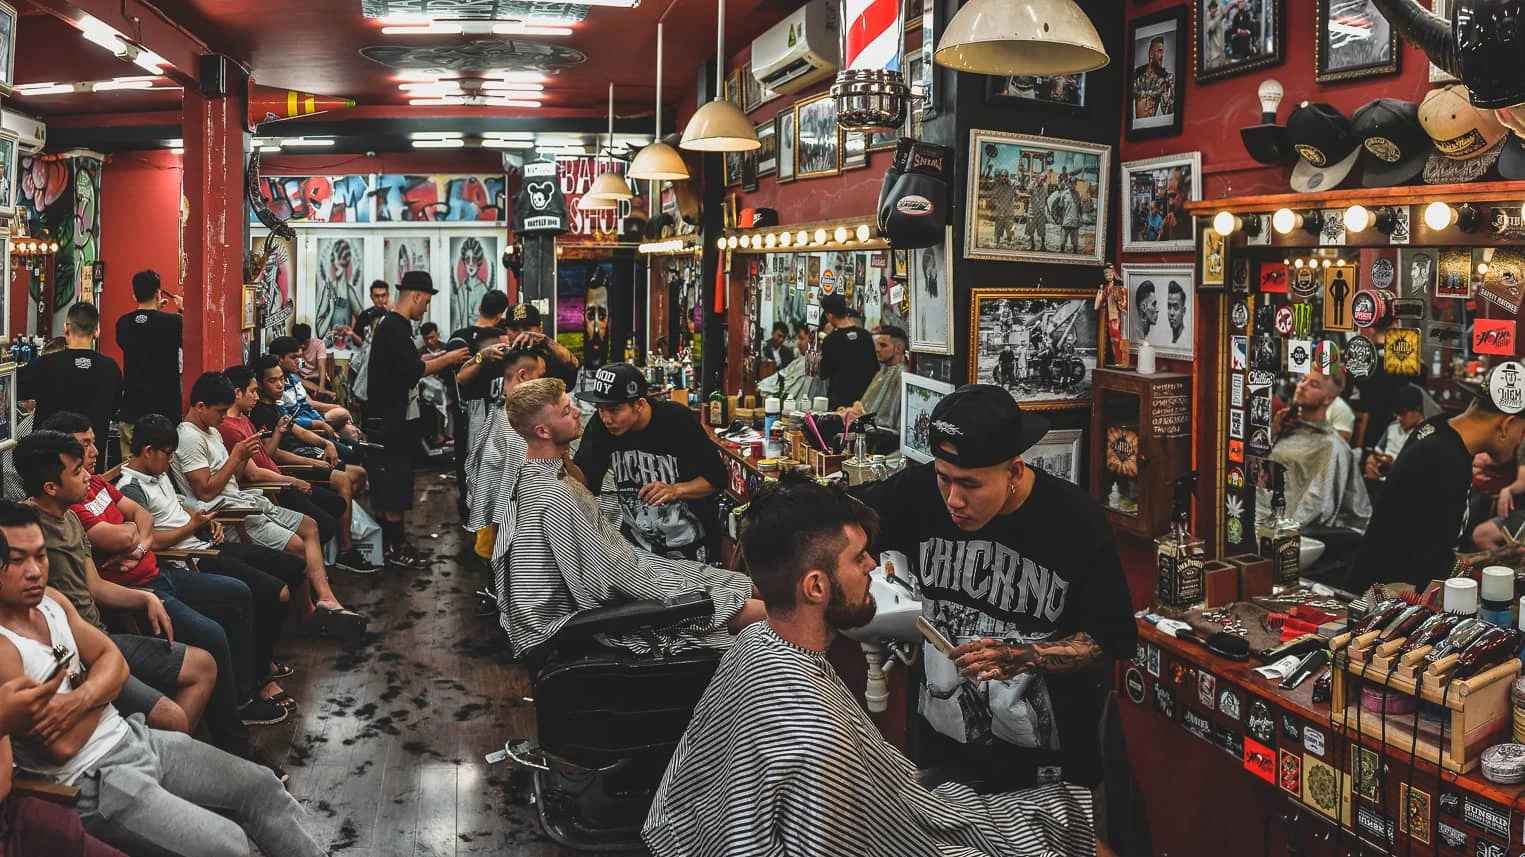 TOP 10 tiệm cắt tóc nam tốt nhất ở TPHCM